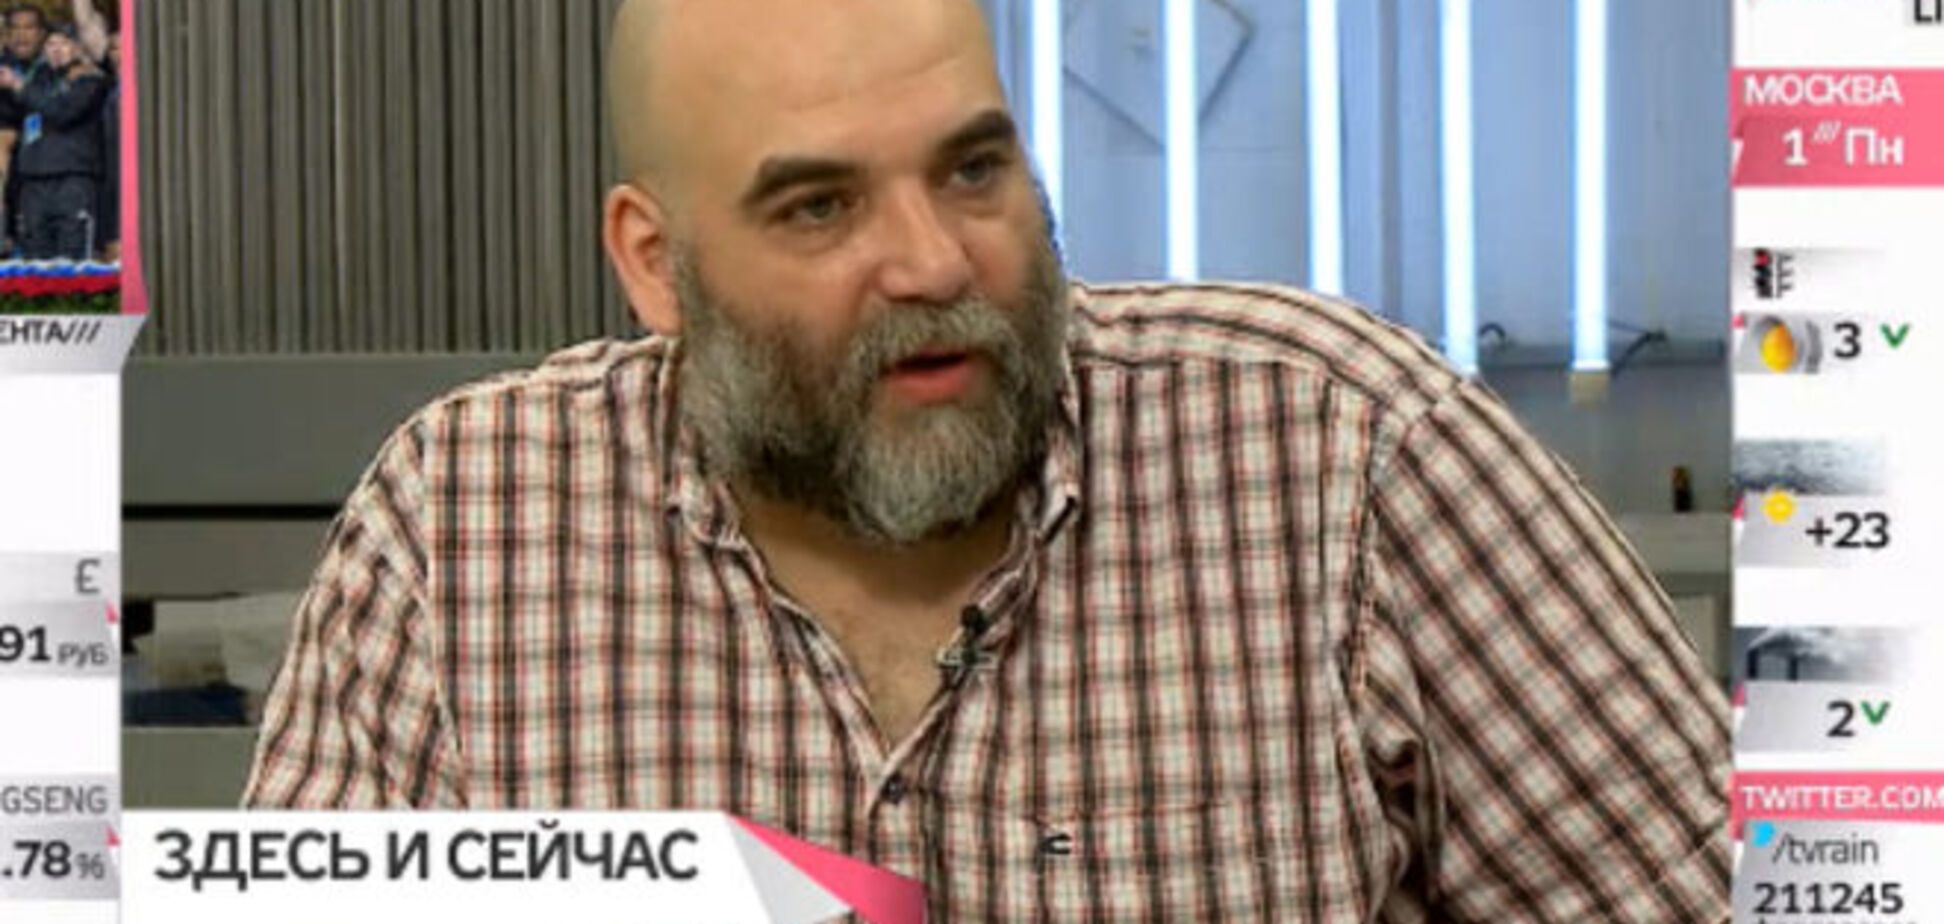 ФСБ задержала журналиста, ехавшего от террористов 'ЛНР'